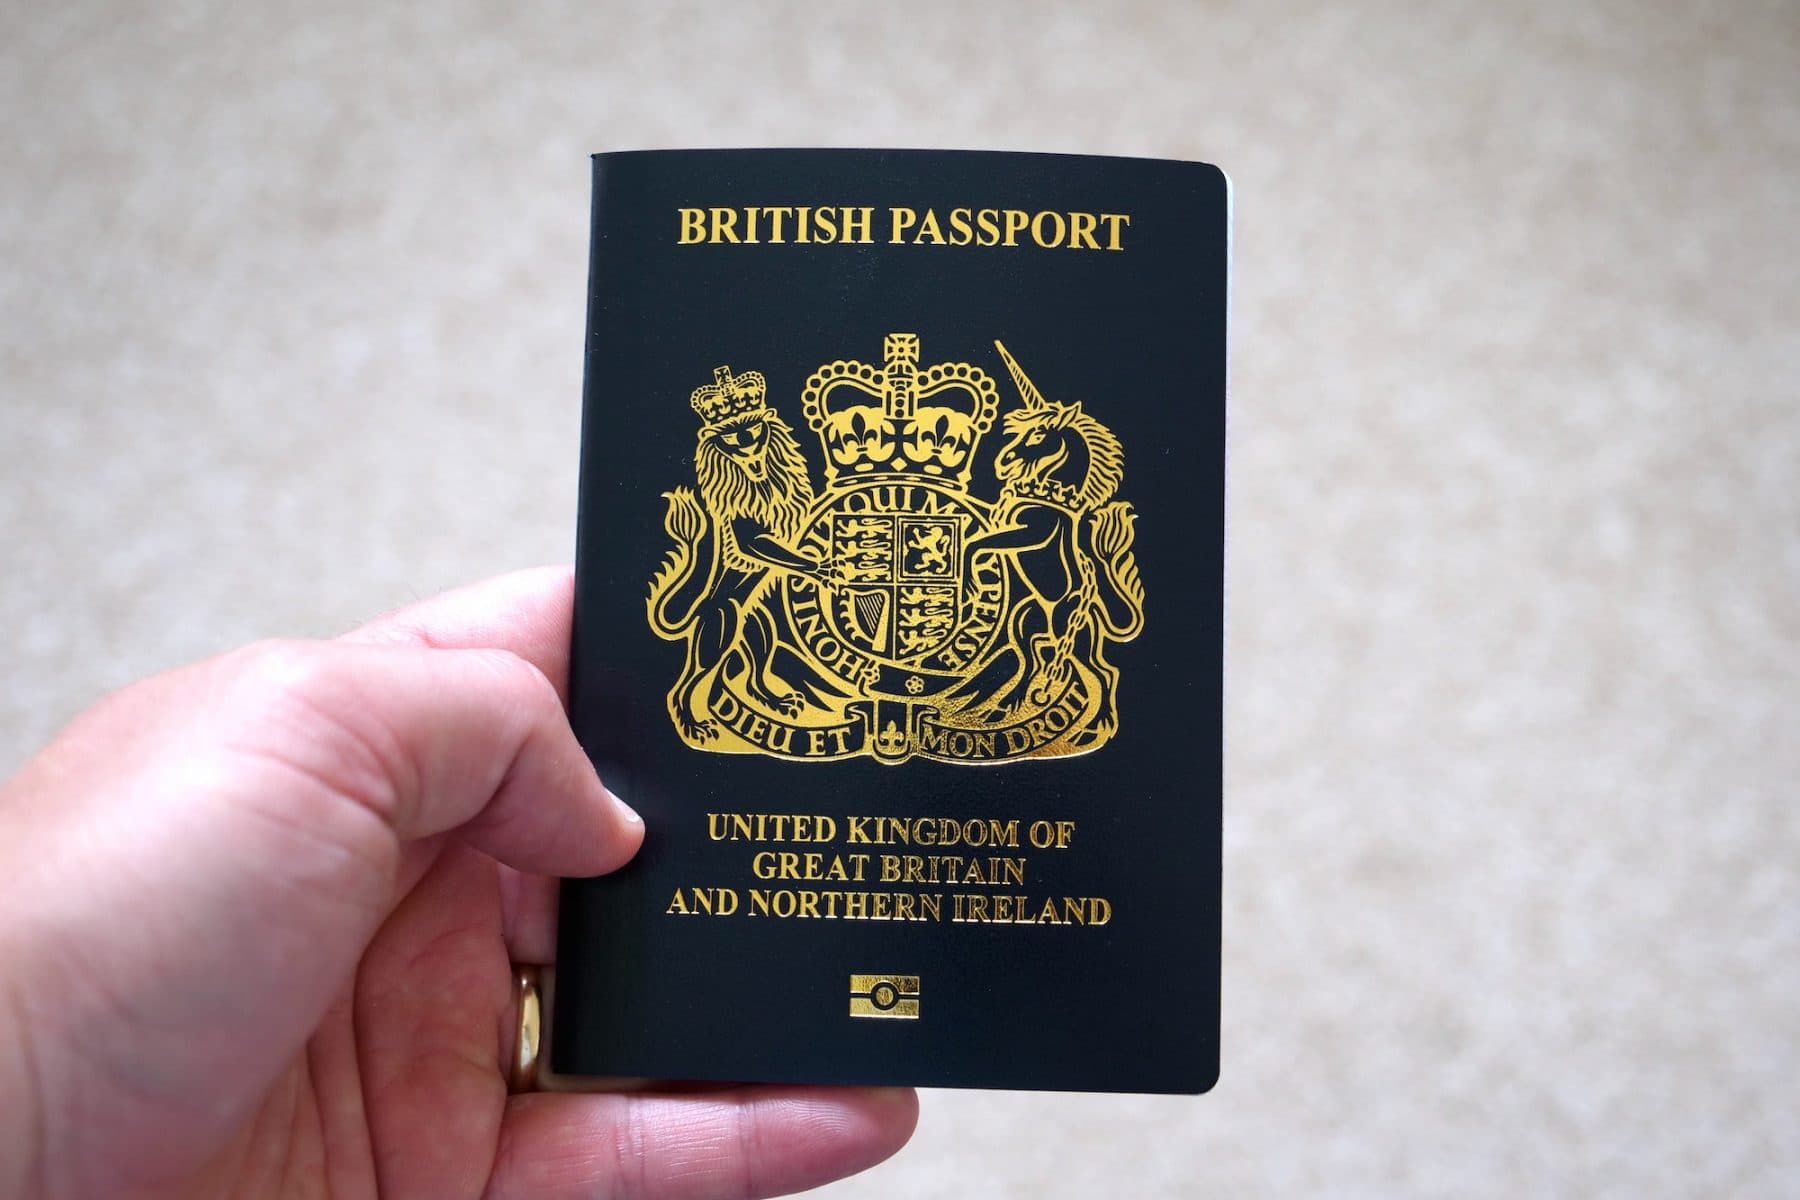 renew-uk-passport-online-your-essential-guide